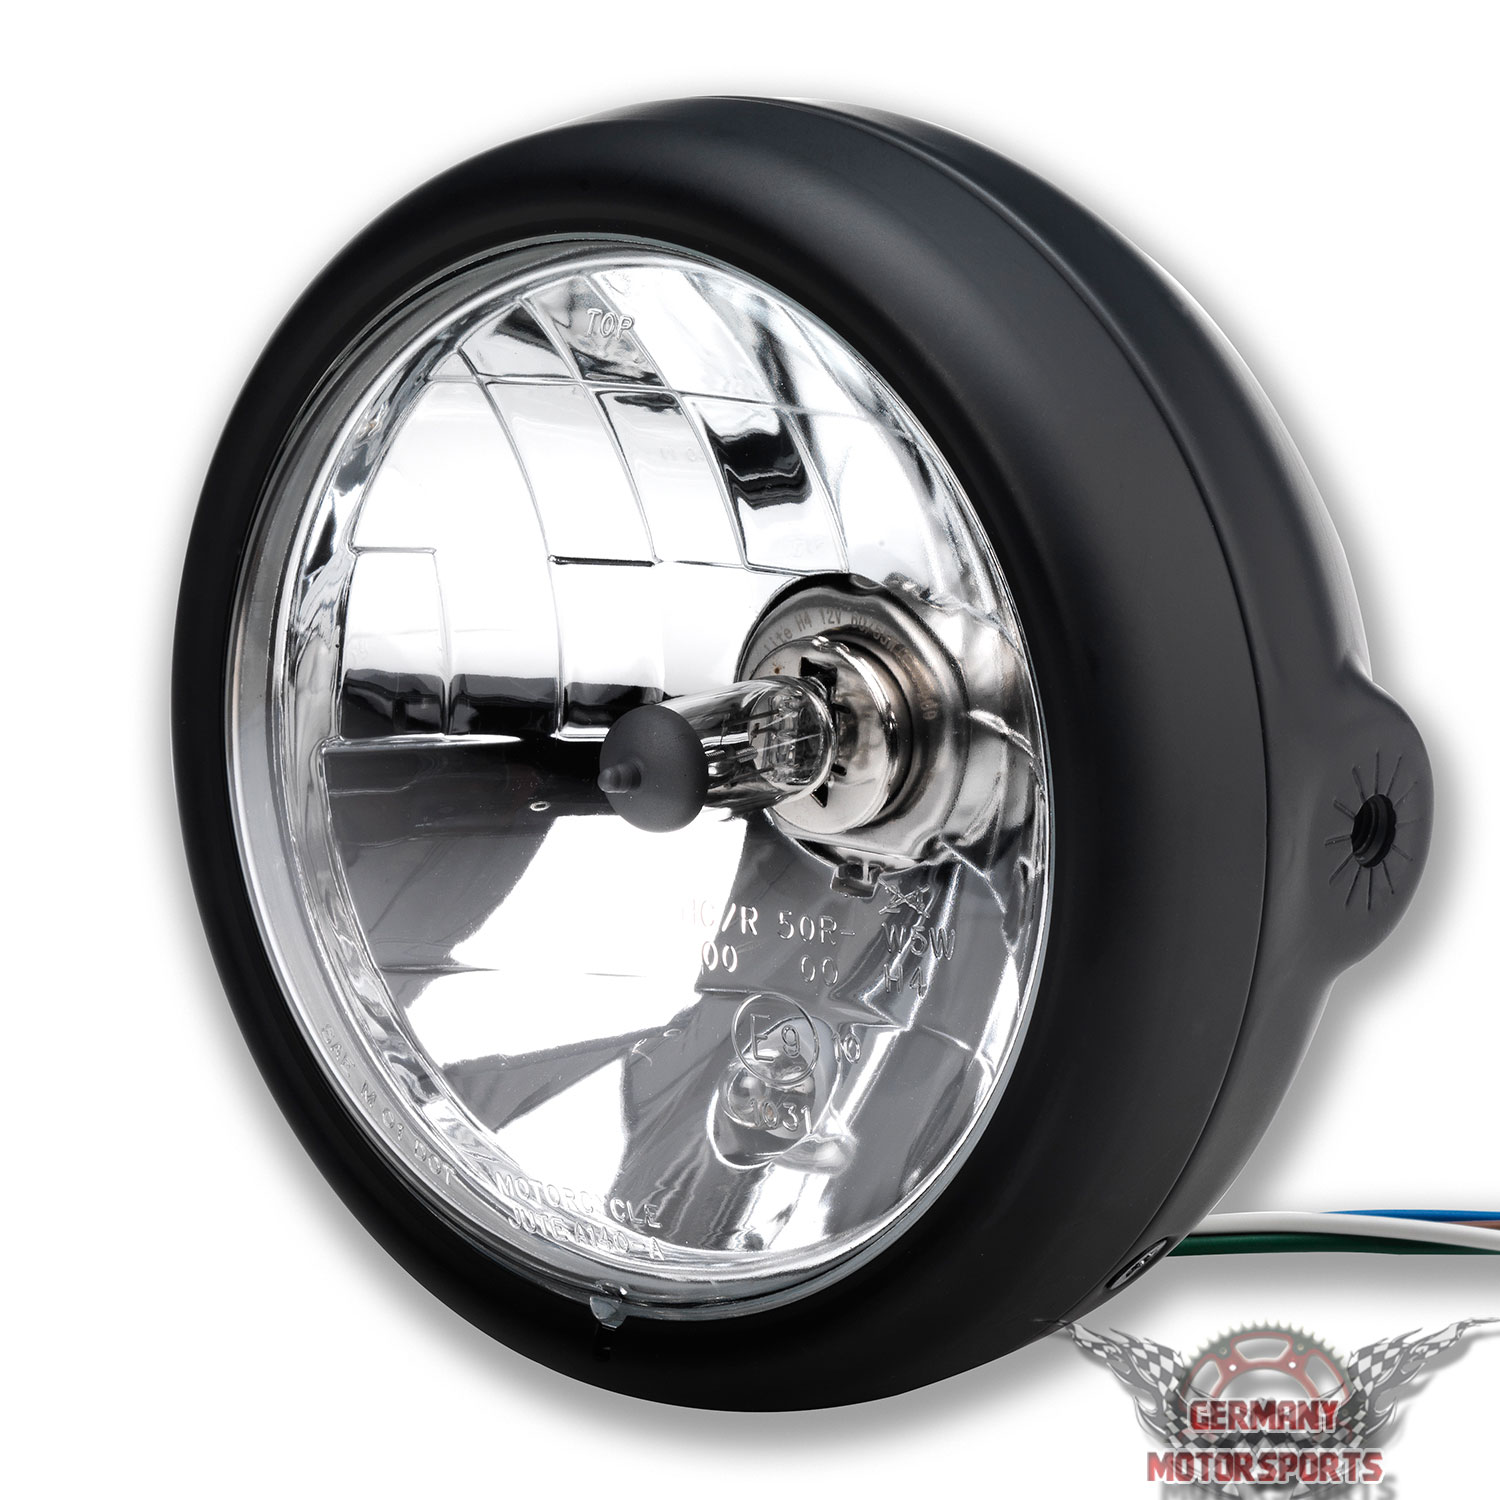 ✨ LED Scheinwerfer Set 5,75 Zoll für Motorrad Universal